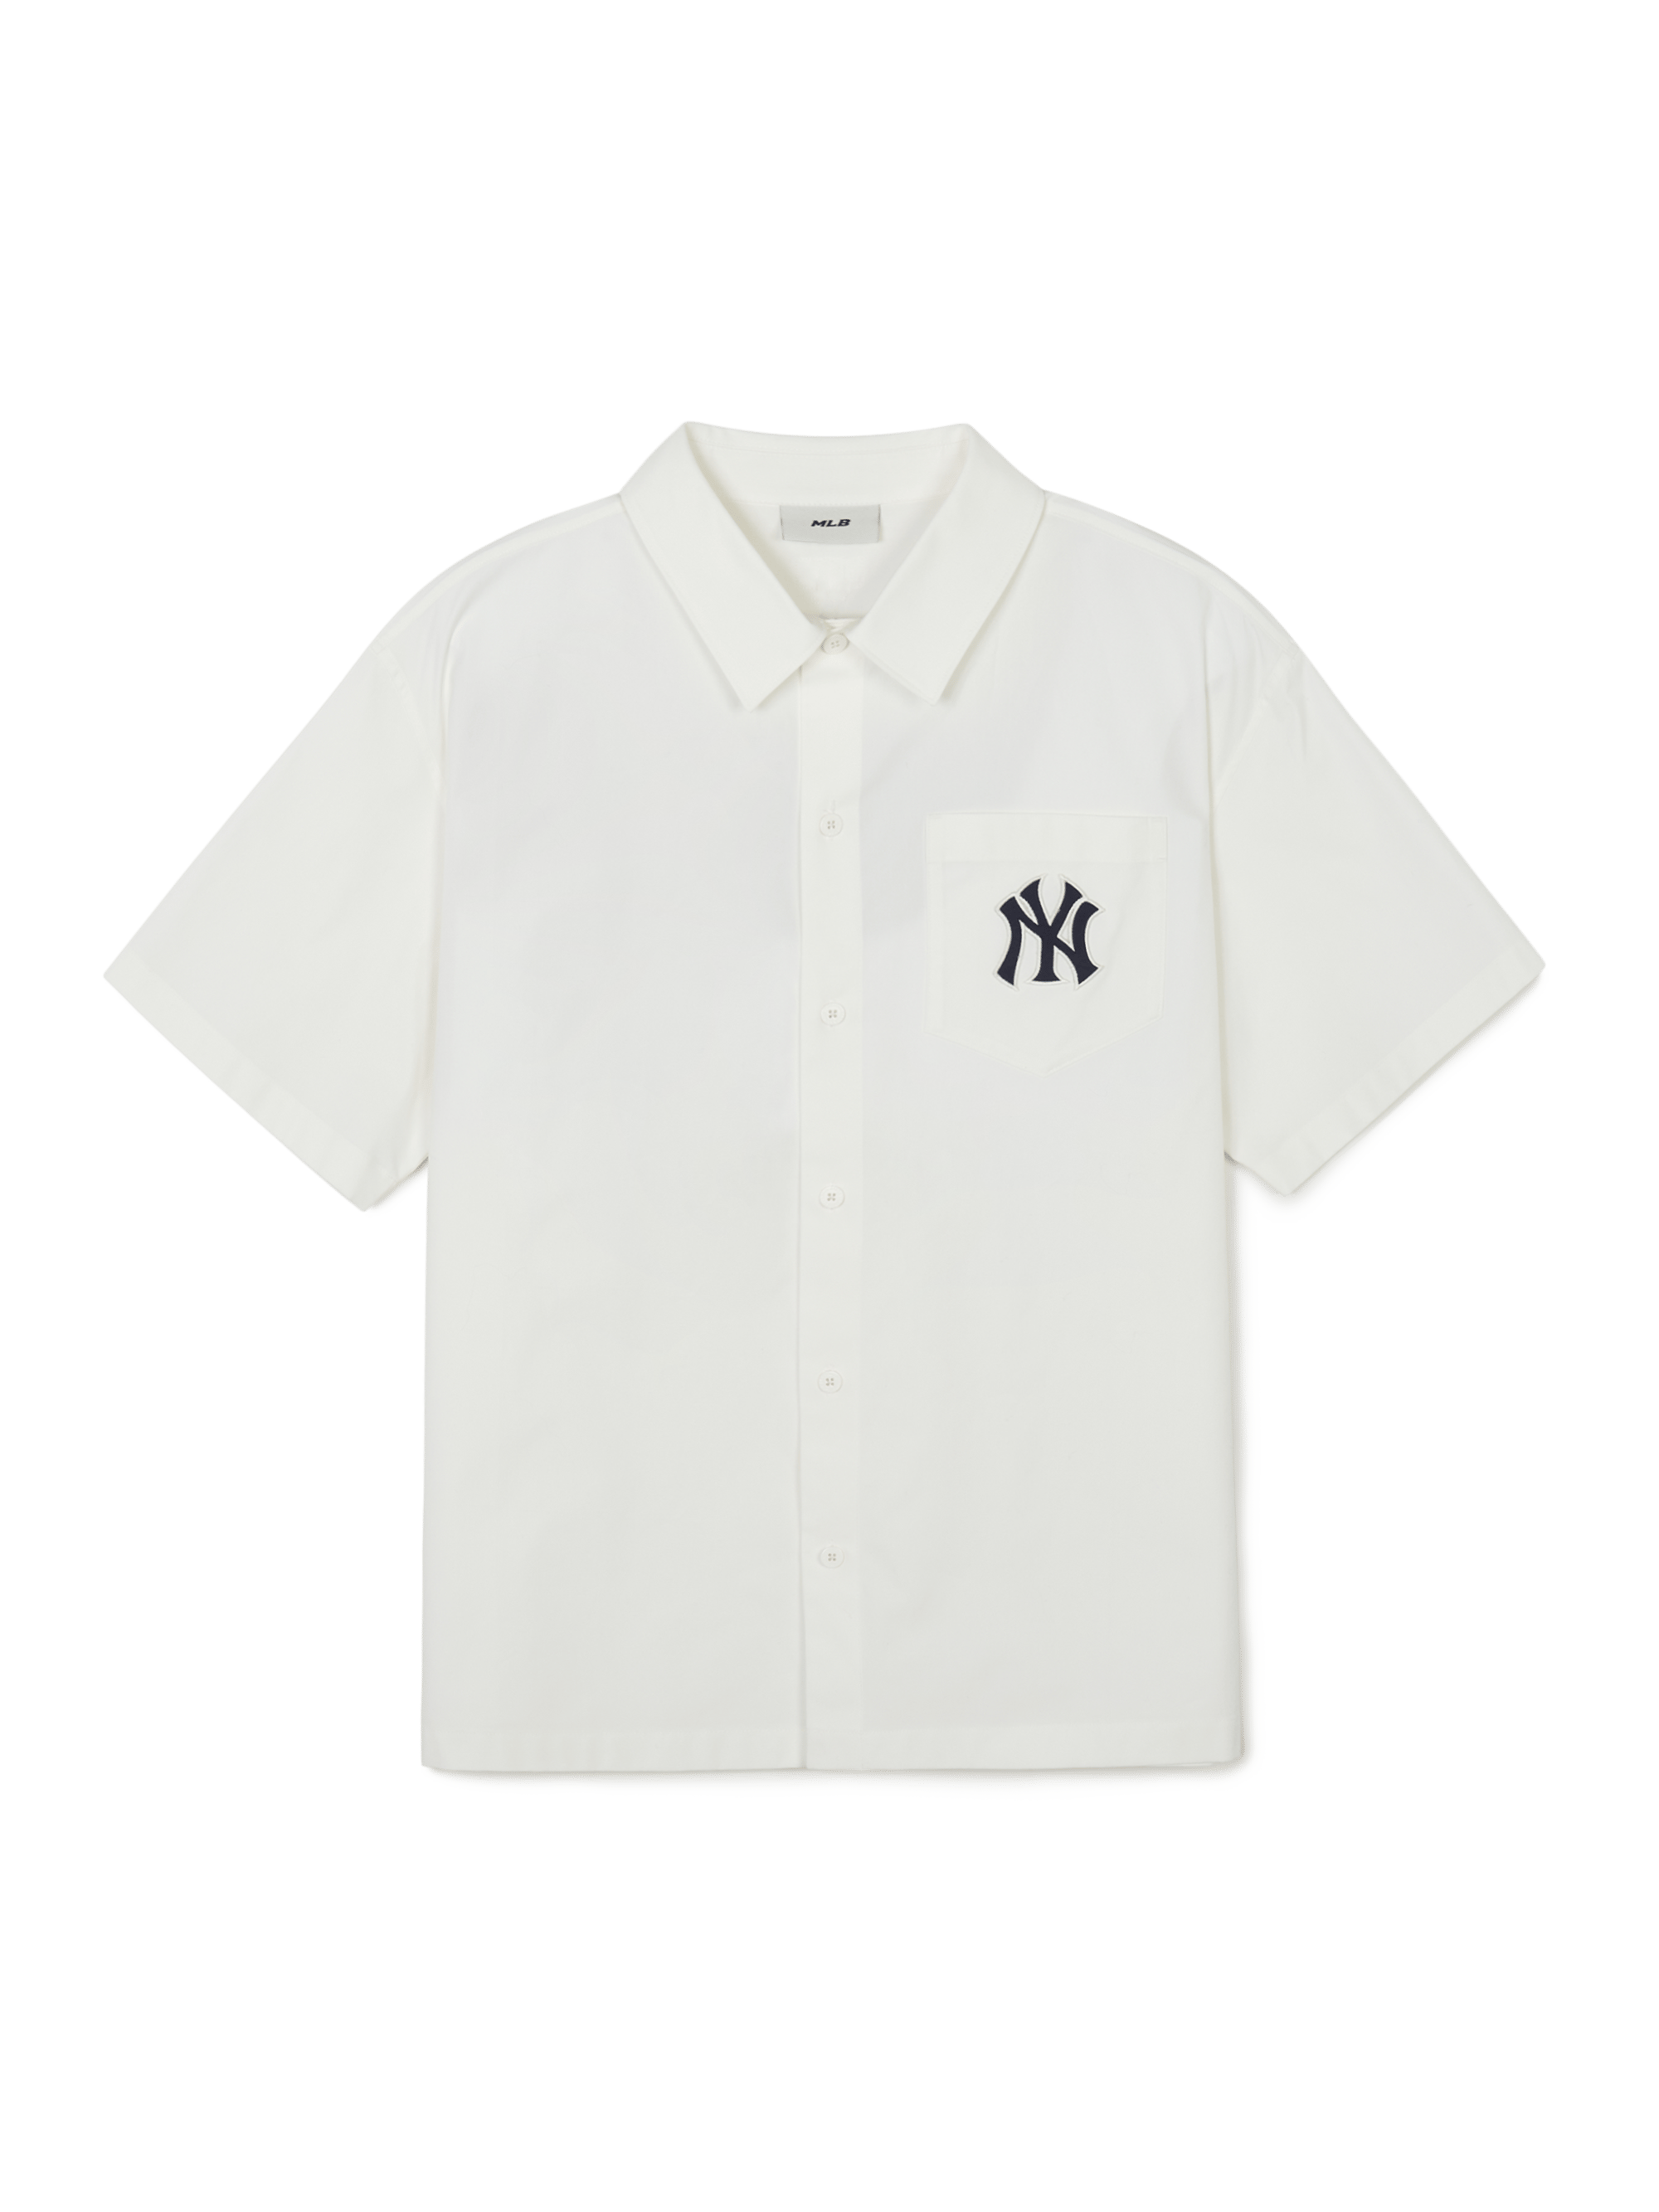 바시티 컬시브 백 그래픽 반팔 셔츠 뉴욕양키스